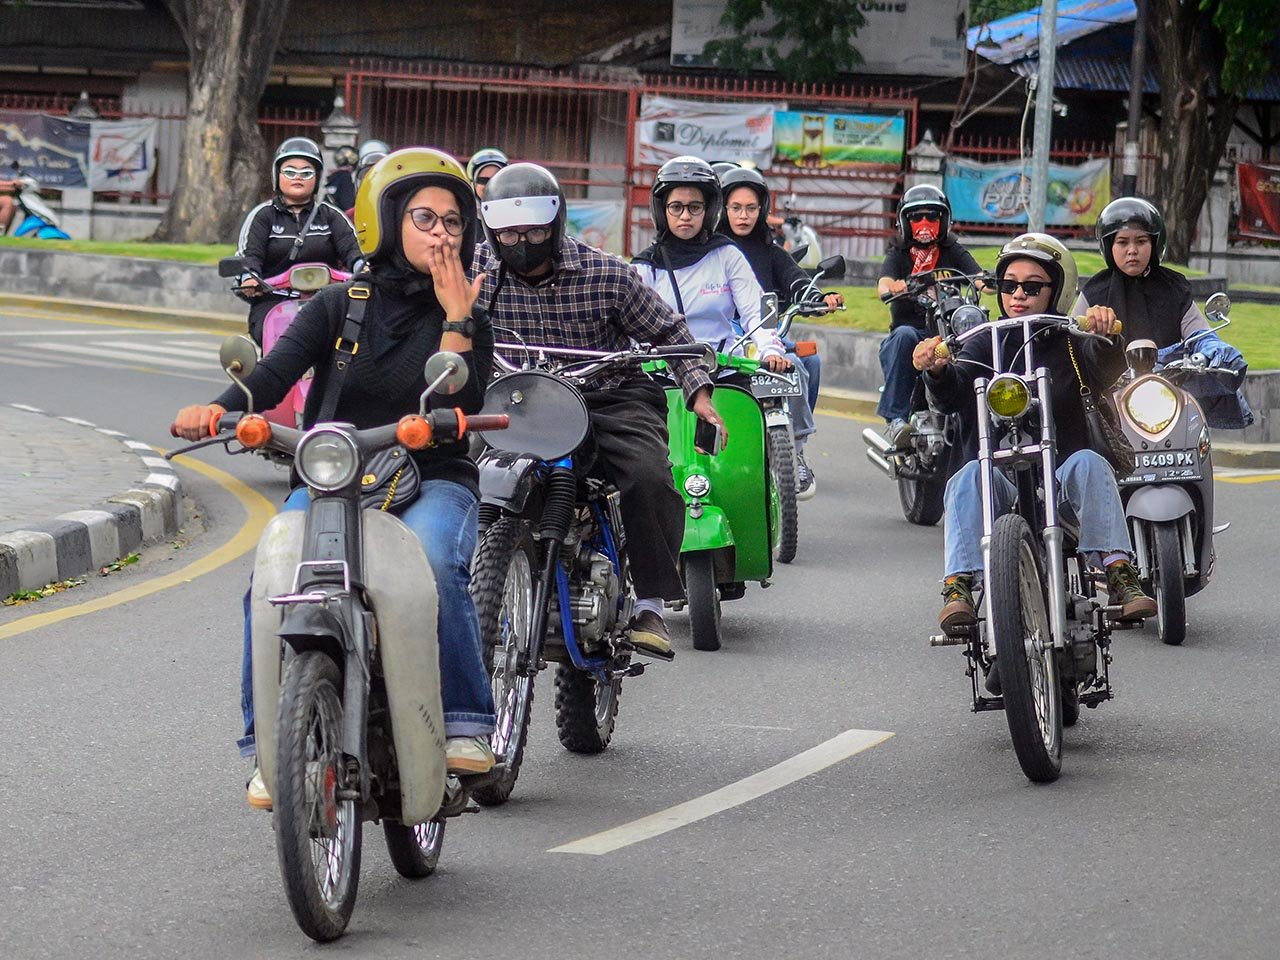 TUTURA.ID - The Women Ride; mendobrak stereotipe gender di jalanan